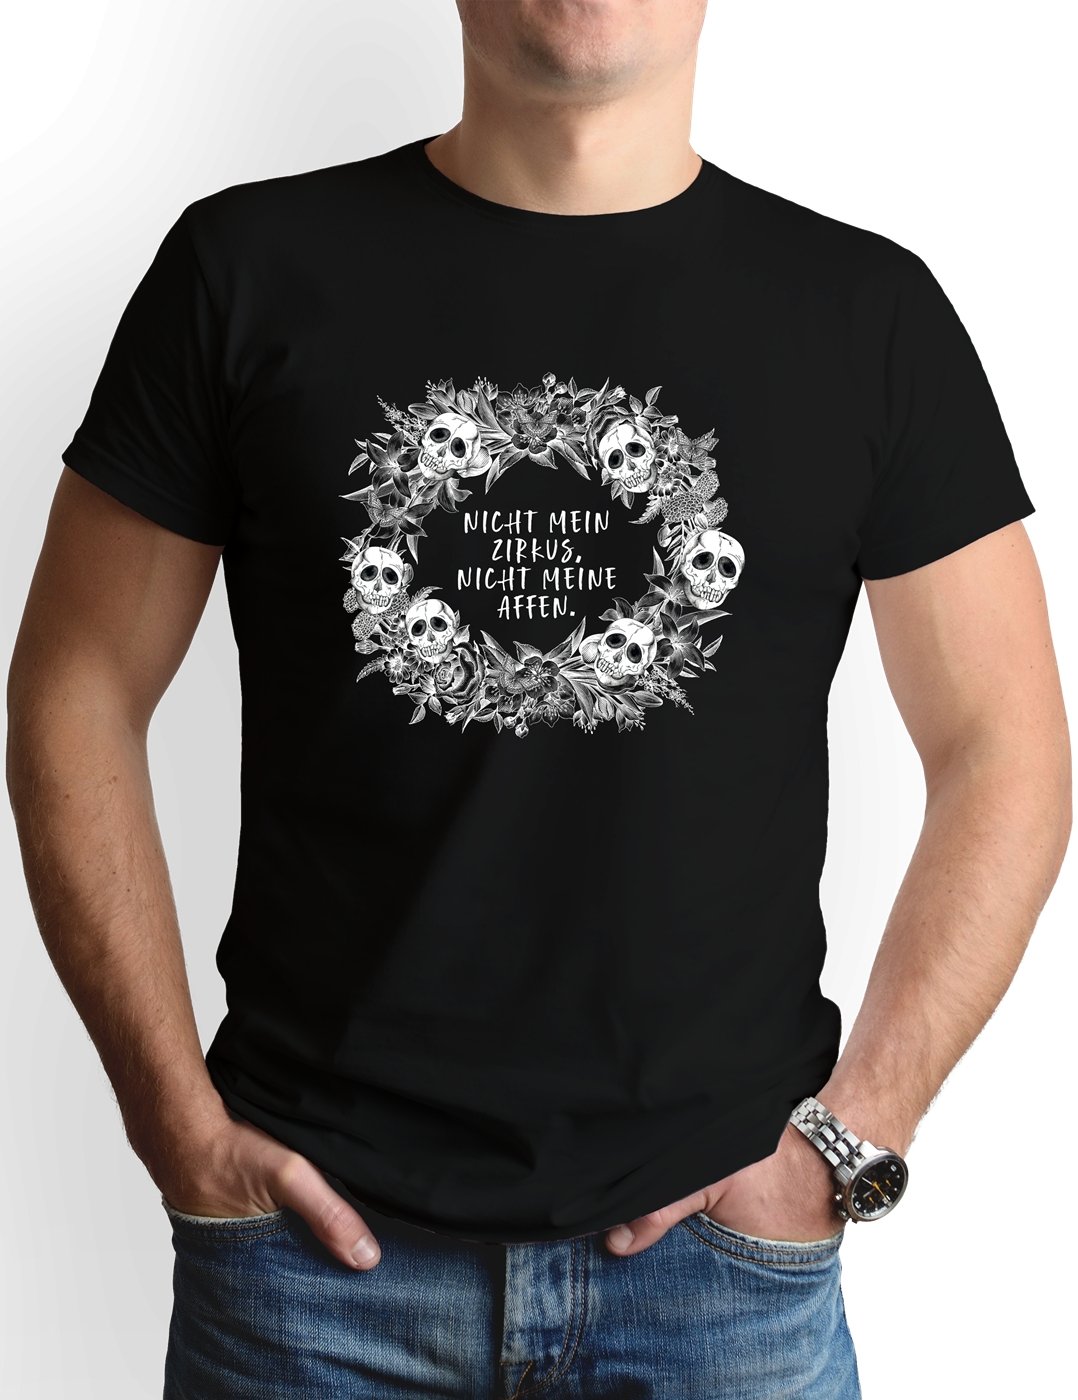 Bild: T-Shirt Herren - Nicht mein Zirkus, nicht meine Affen. - Skull Statement Geschenkidee